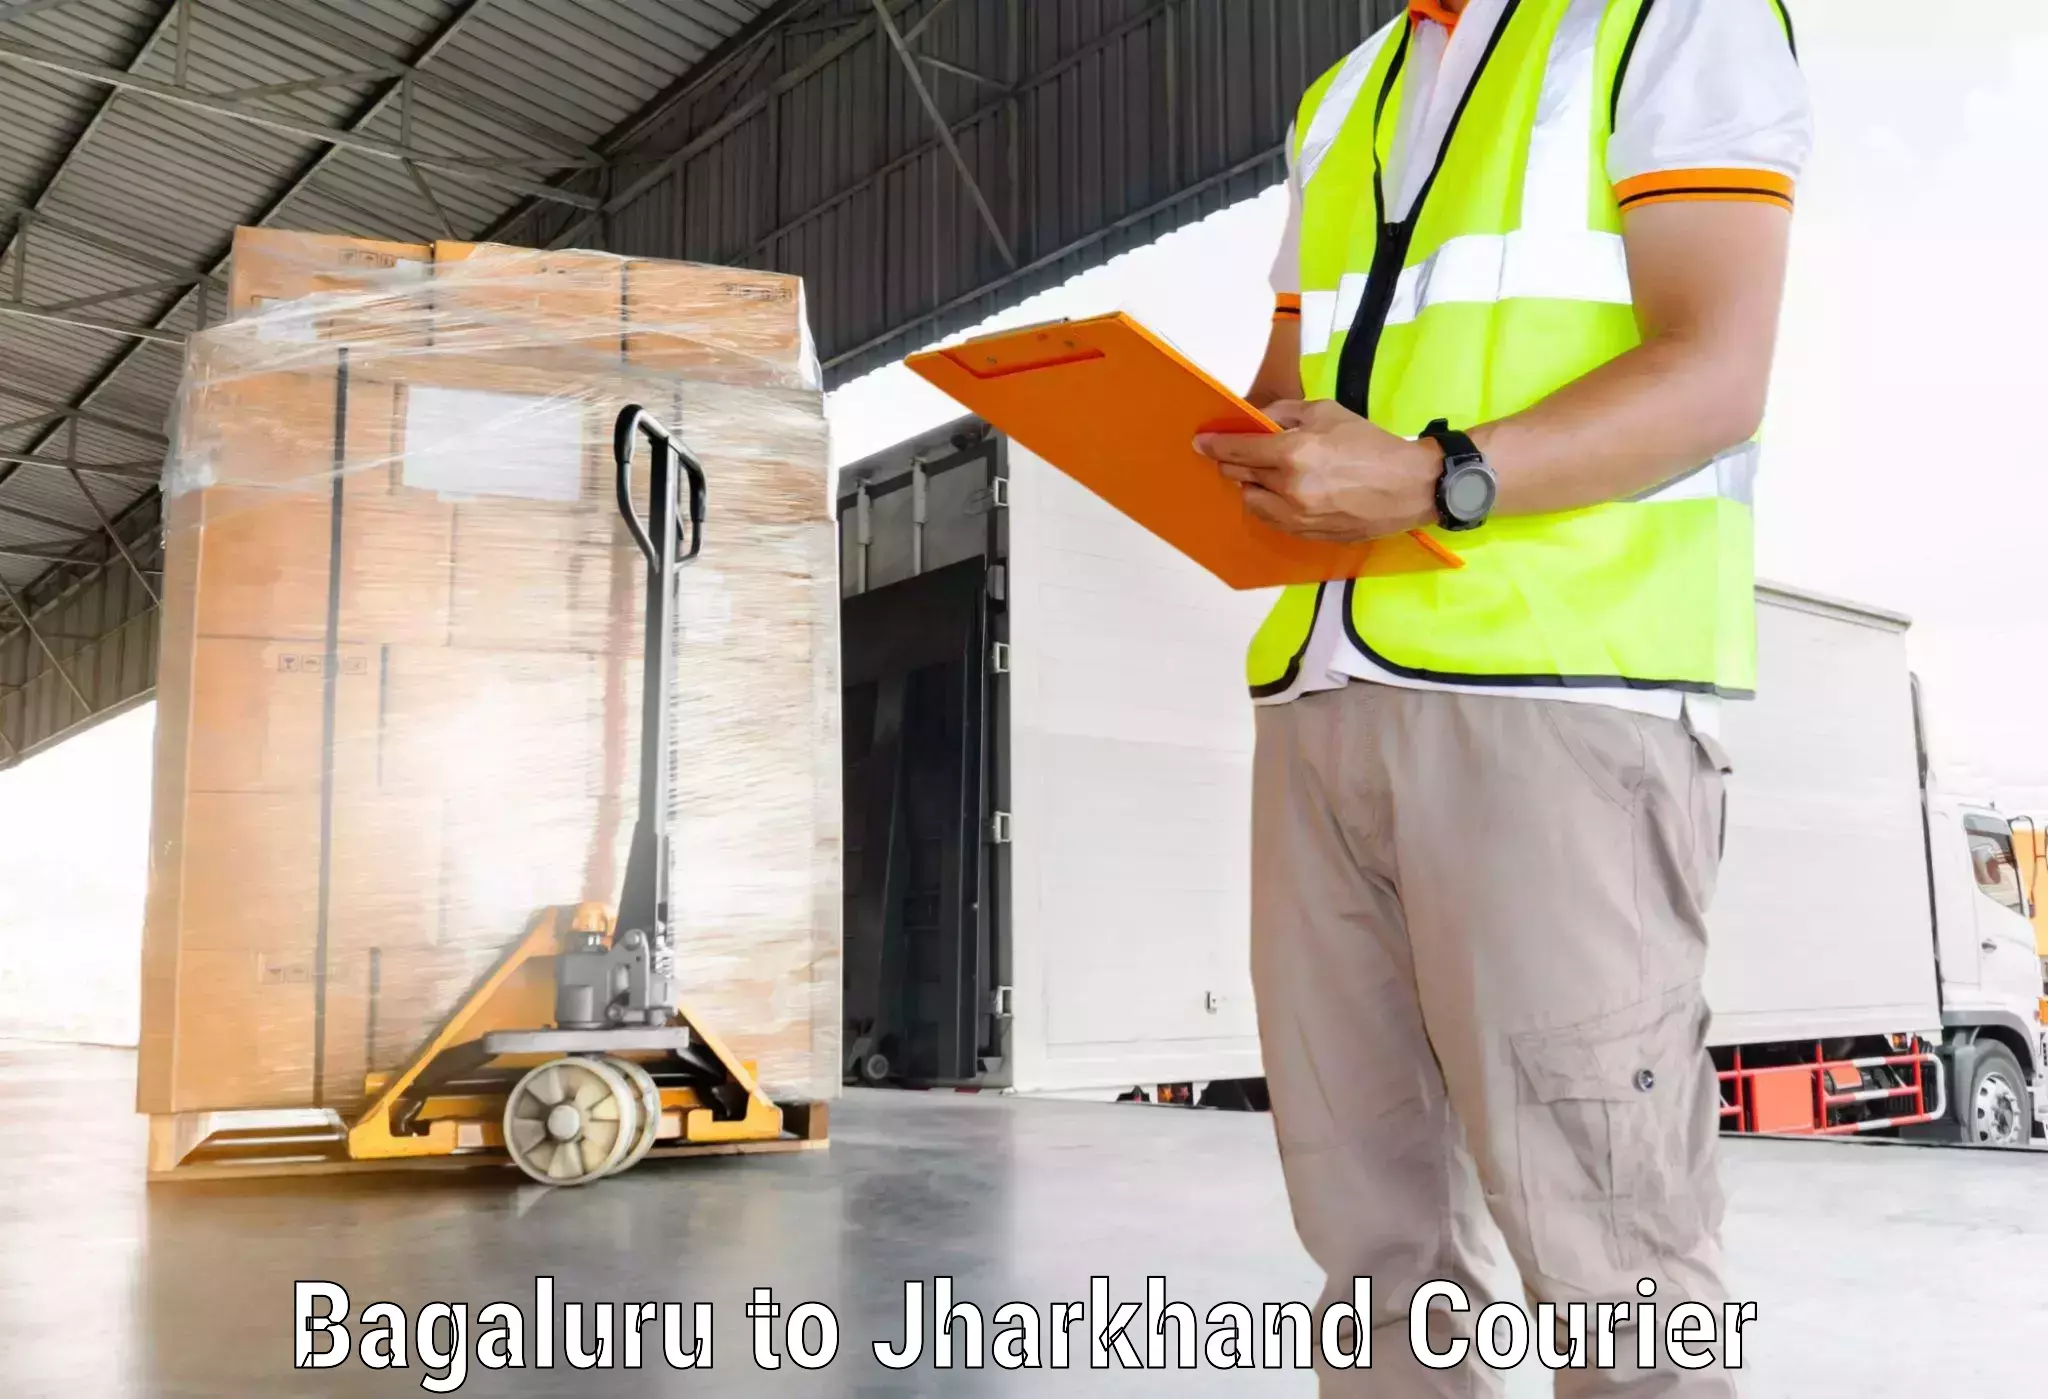 Multi-service courier options in Bagaluru to Bundu